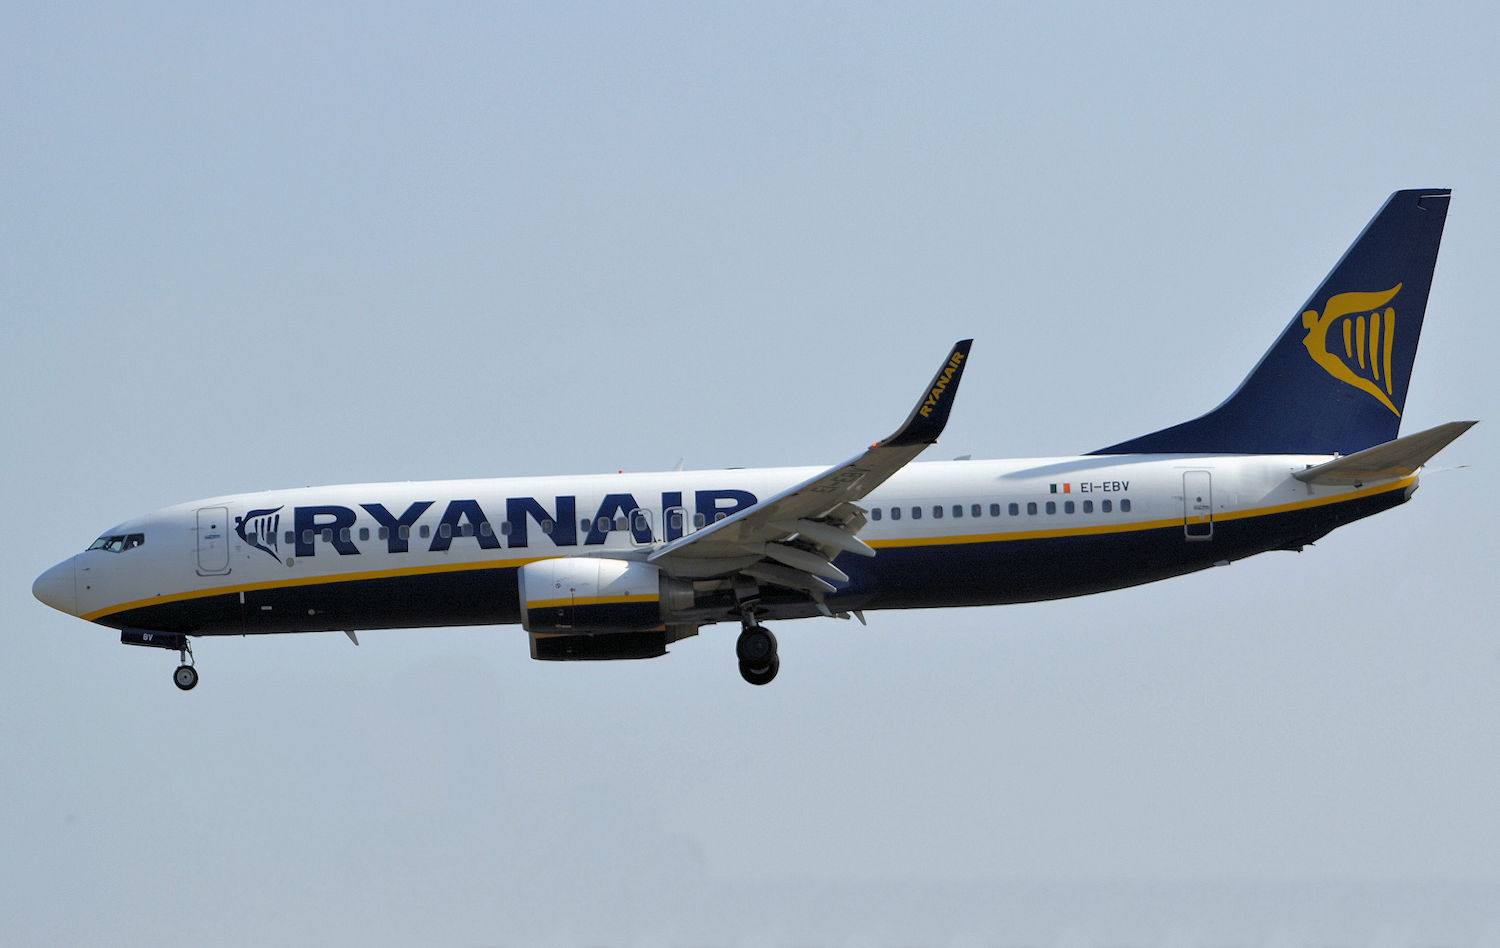 EI-EBV/EIEBV Ryanair Boeing 737 NG Airframe Information - AVSpotters.com